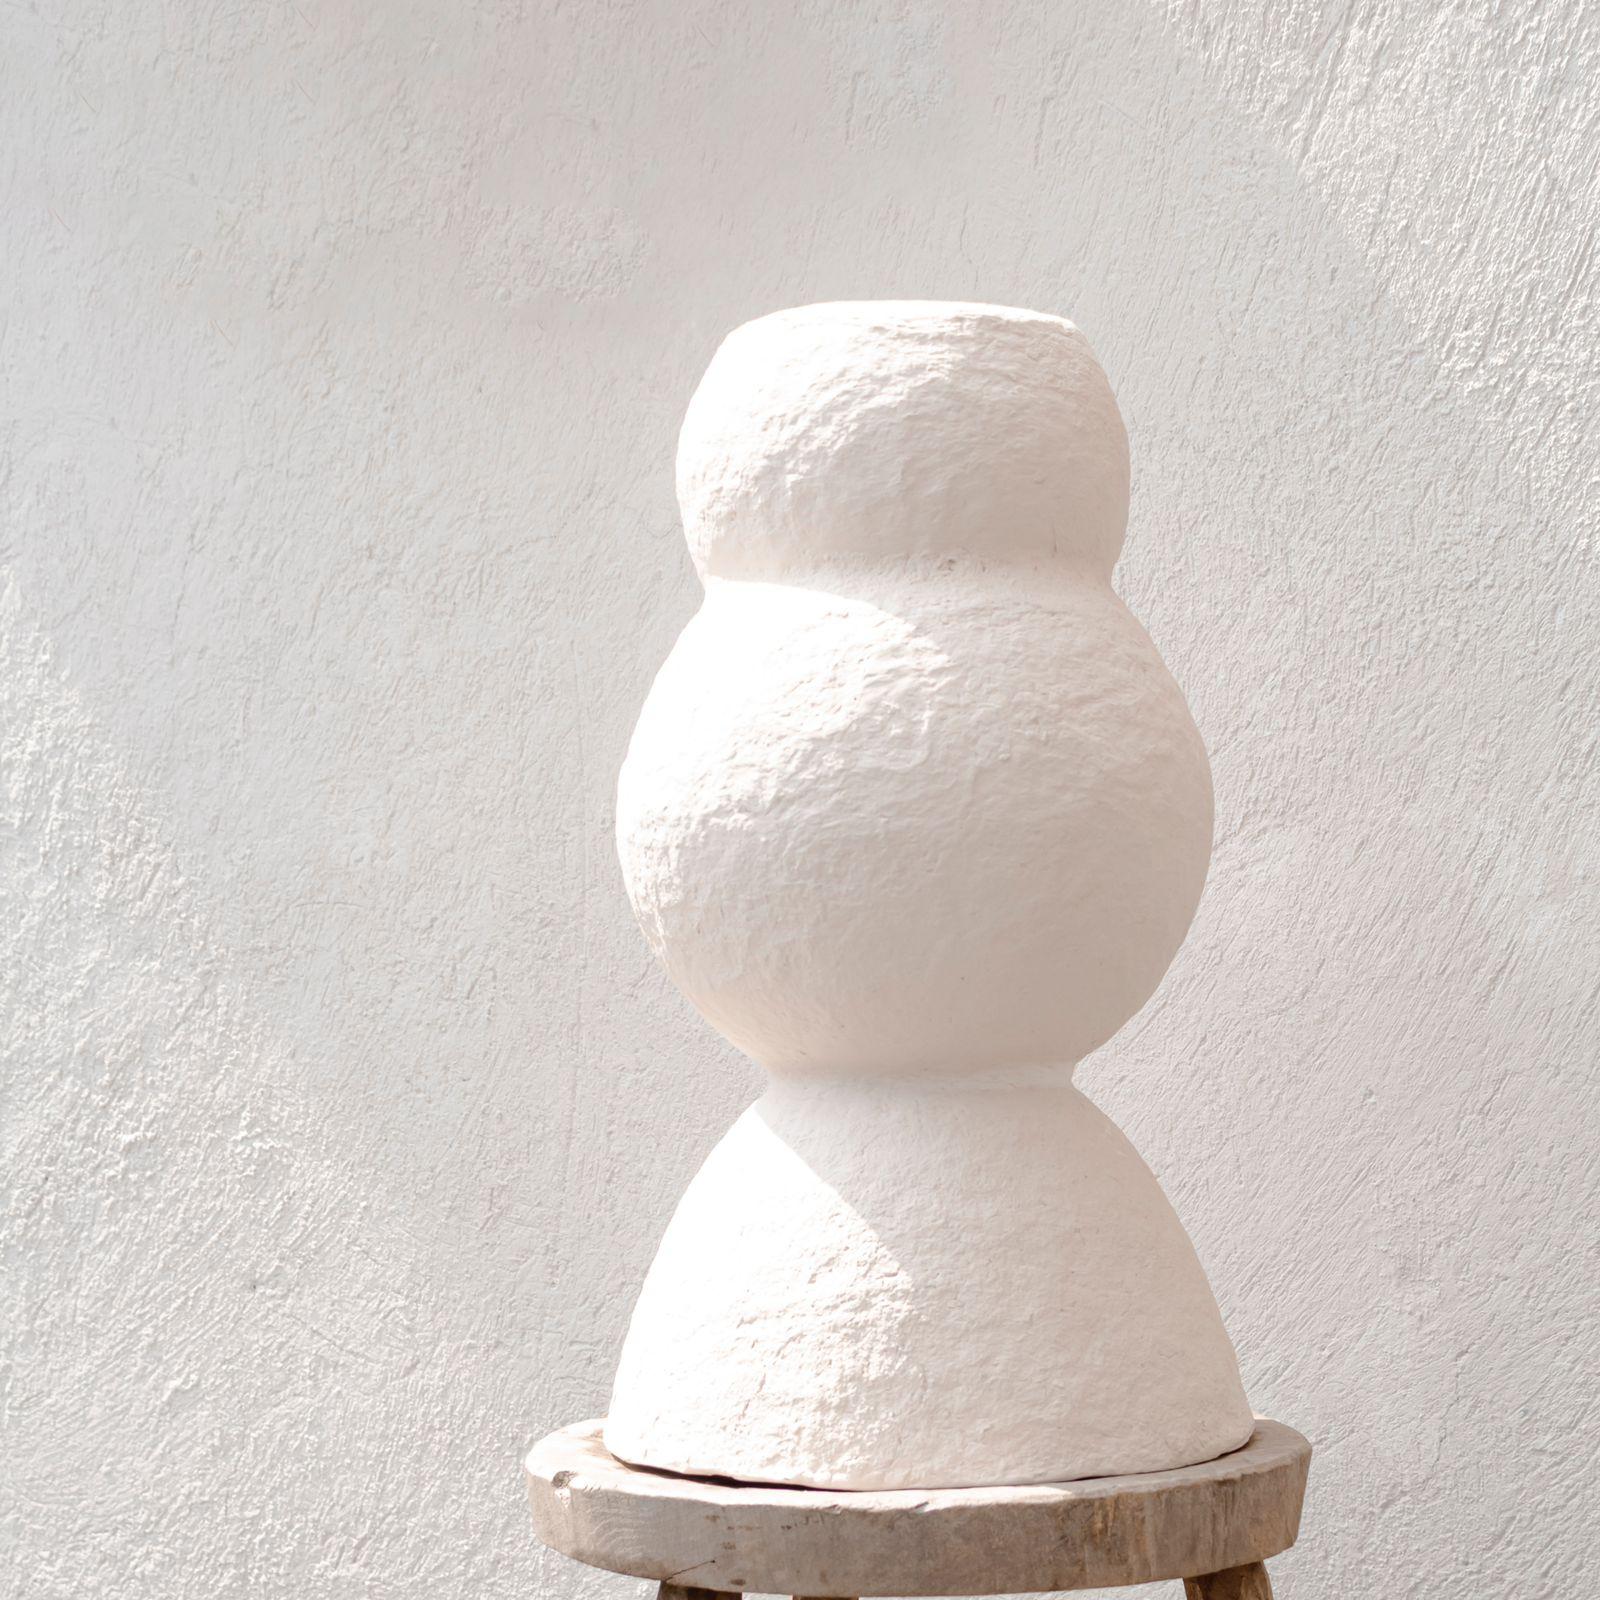 Grand vase Jarrón Oasis d'Ana Tron
Fait à la main
Dimensions : D 24 x H 40 cm
MATERIAL : Papier recyclé avec de la pâte, de la craie de peinture et du vernis mat à base d'eau. Couvercle interne en résine époxy écologique.
Disponible en noir, gris